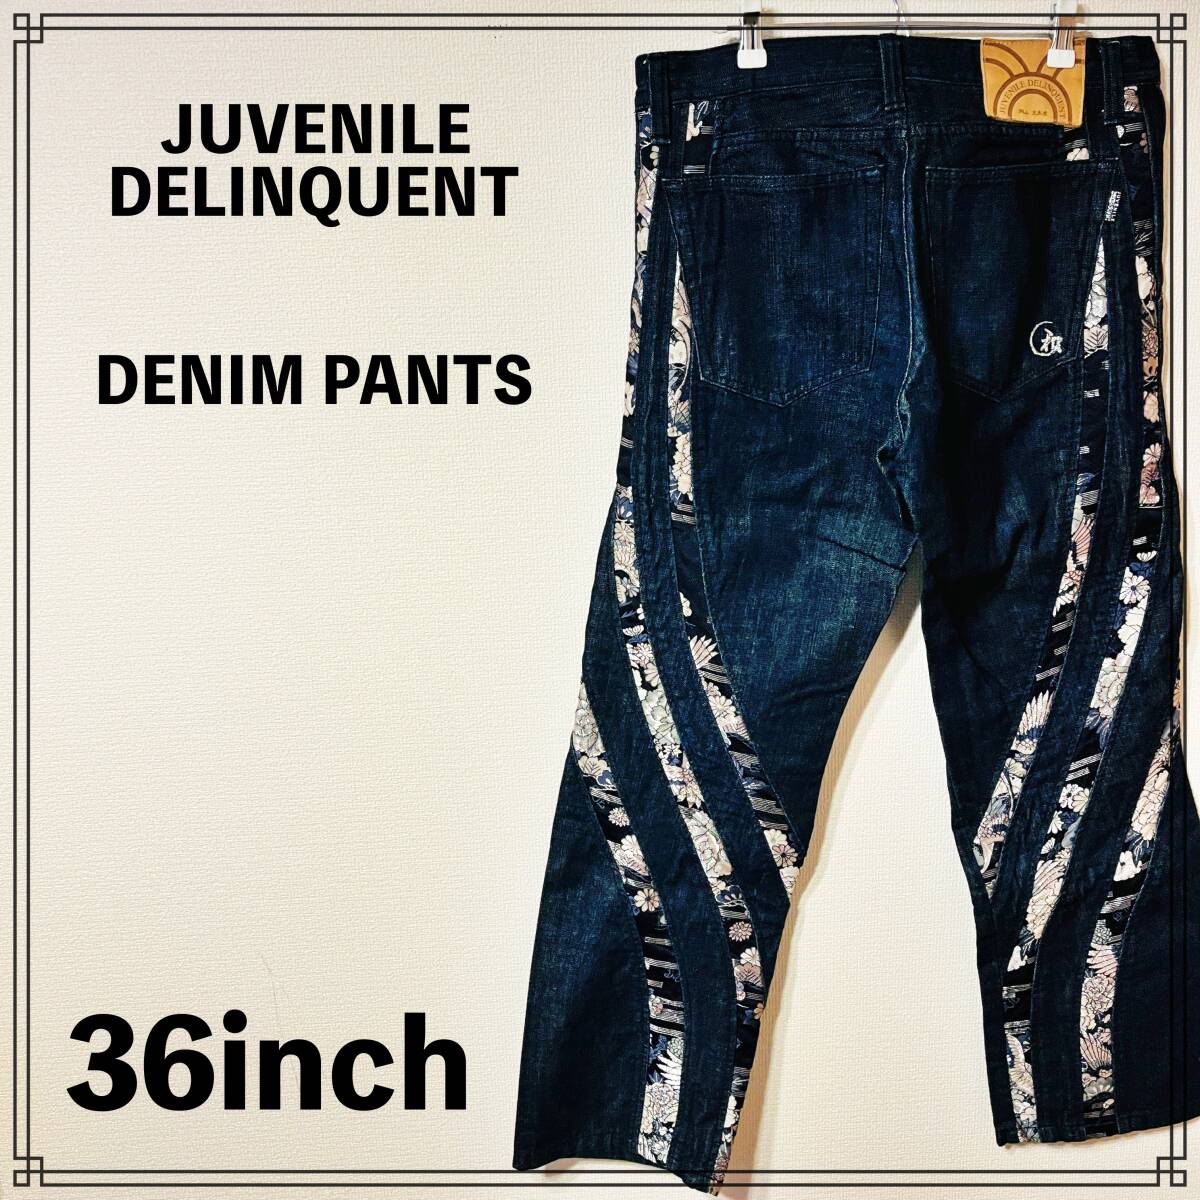 【美品】JUVENILE DELINQUENT DENIM PANTS 36inch ジュブナイル デリンクエント デニム パンツ